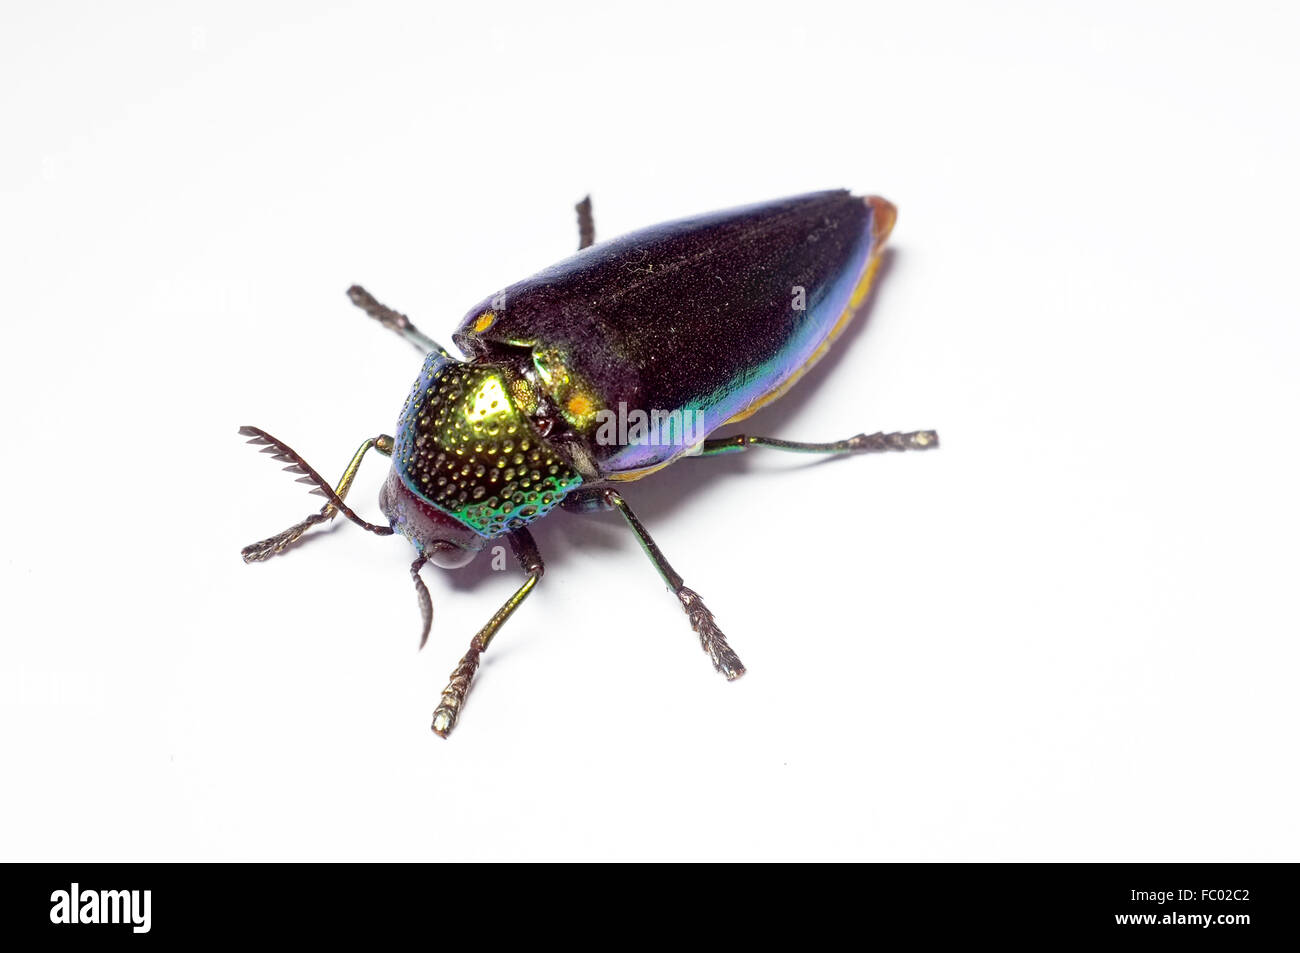 Jewel beetle, coléoptère bois métallique en Thaïlande Banque D'Images